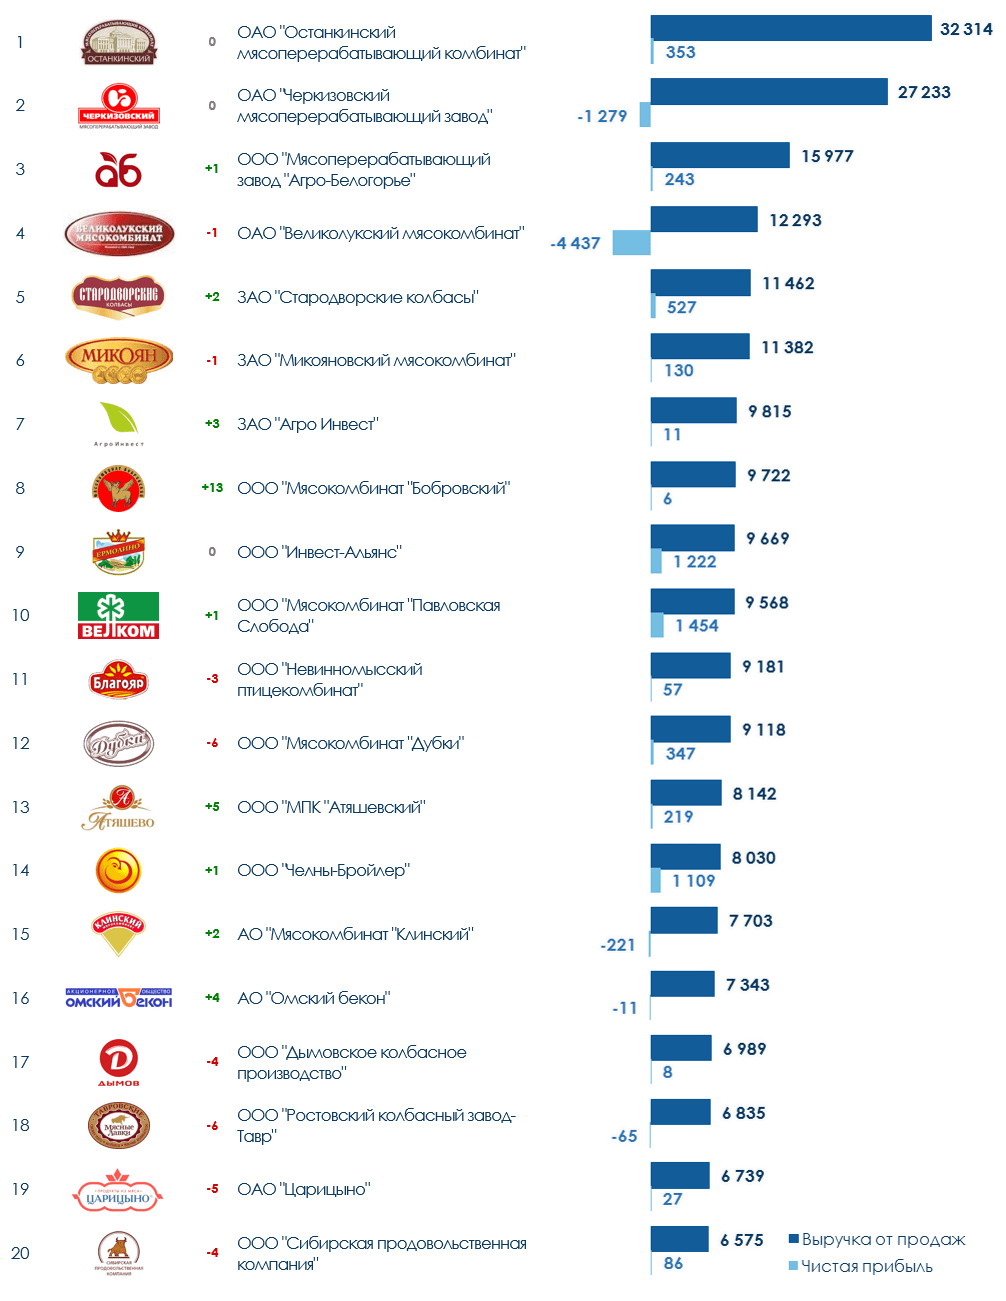 ТОП-20 компаний мясоперерабатывающей промышленности России